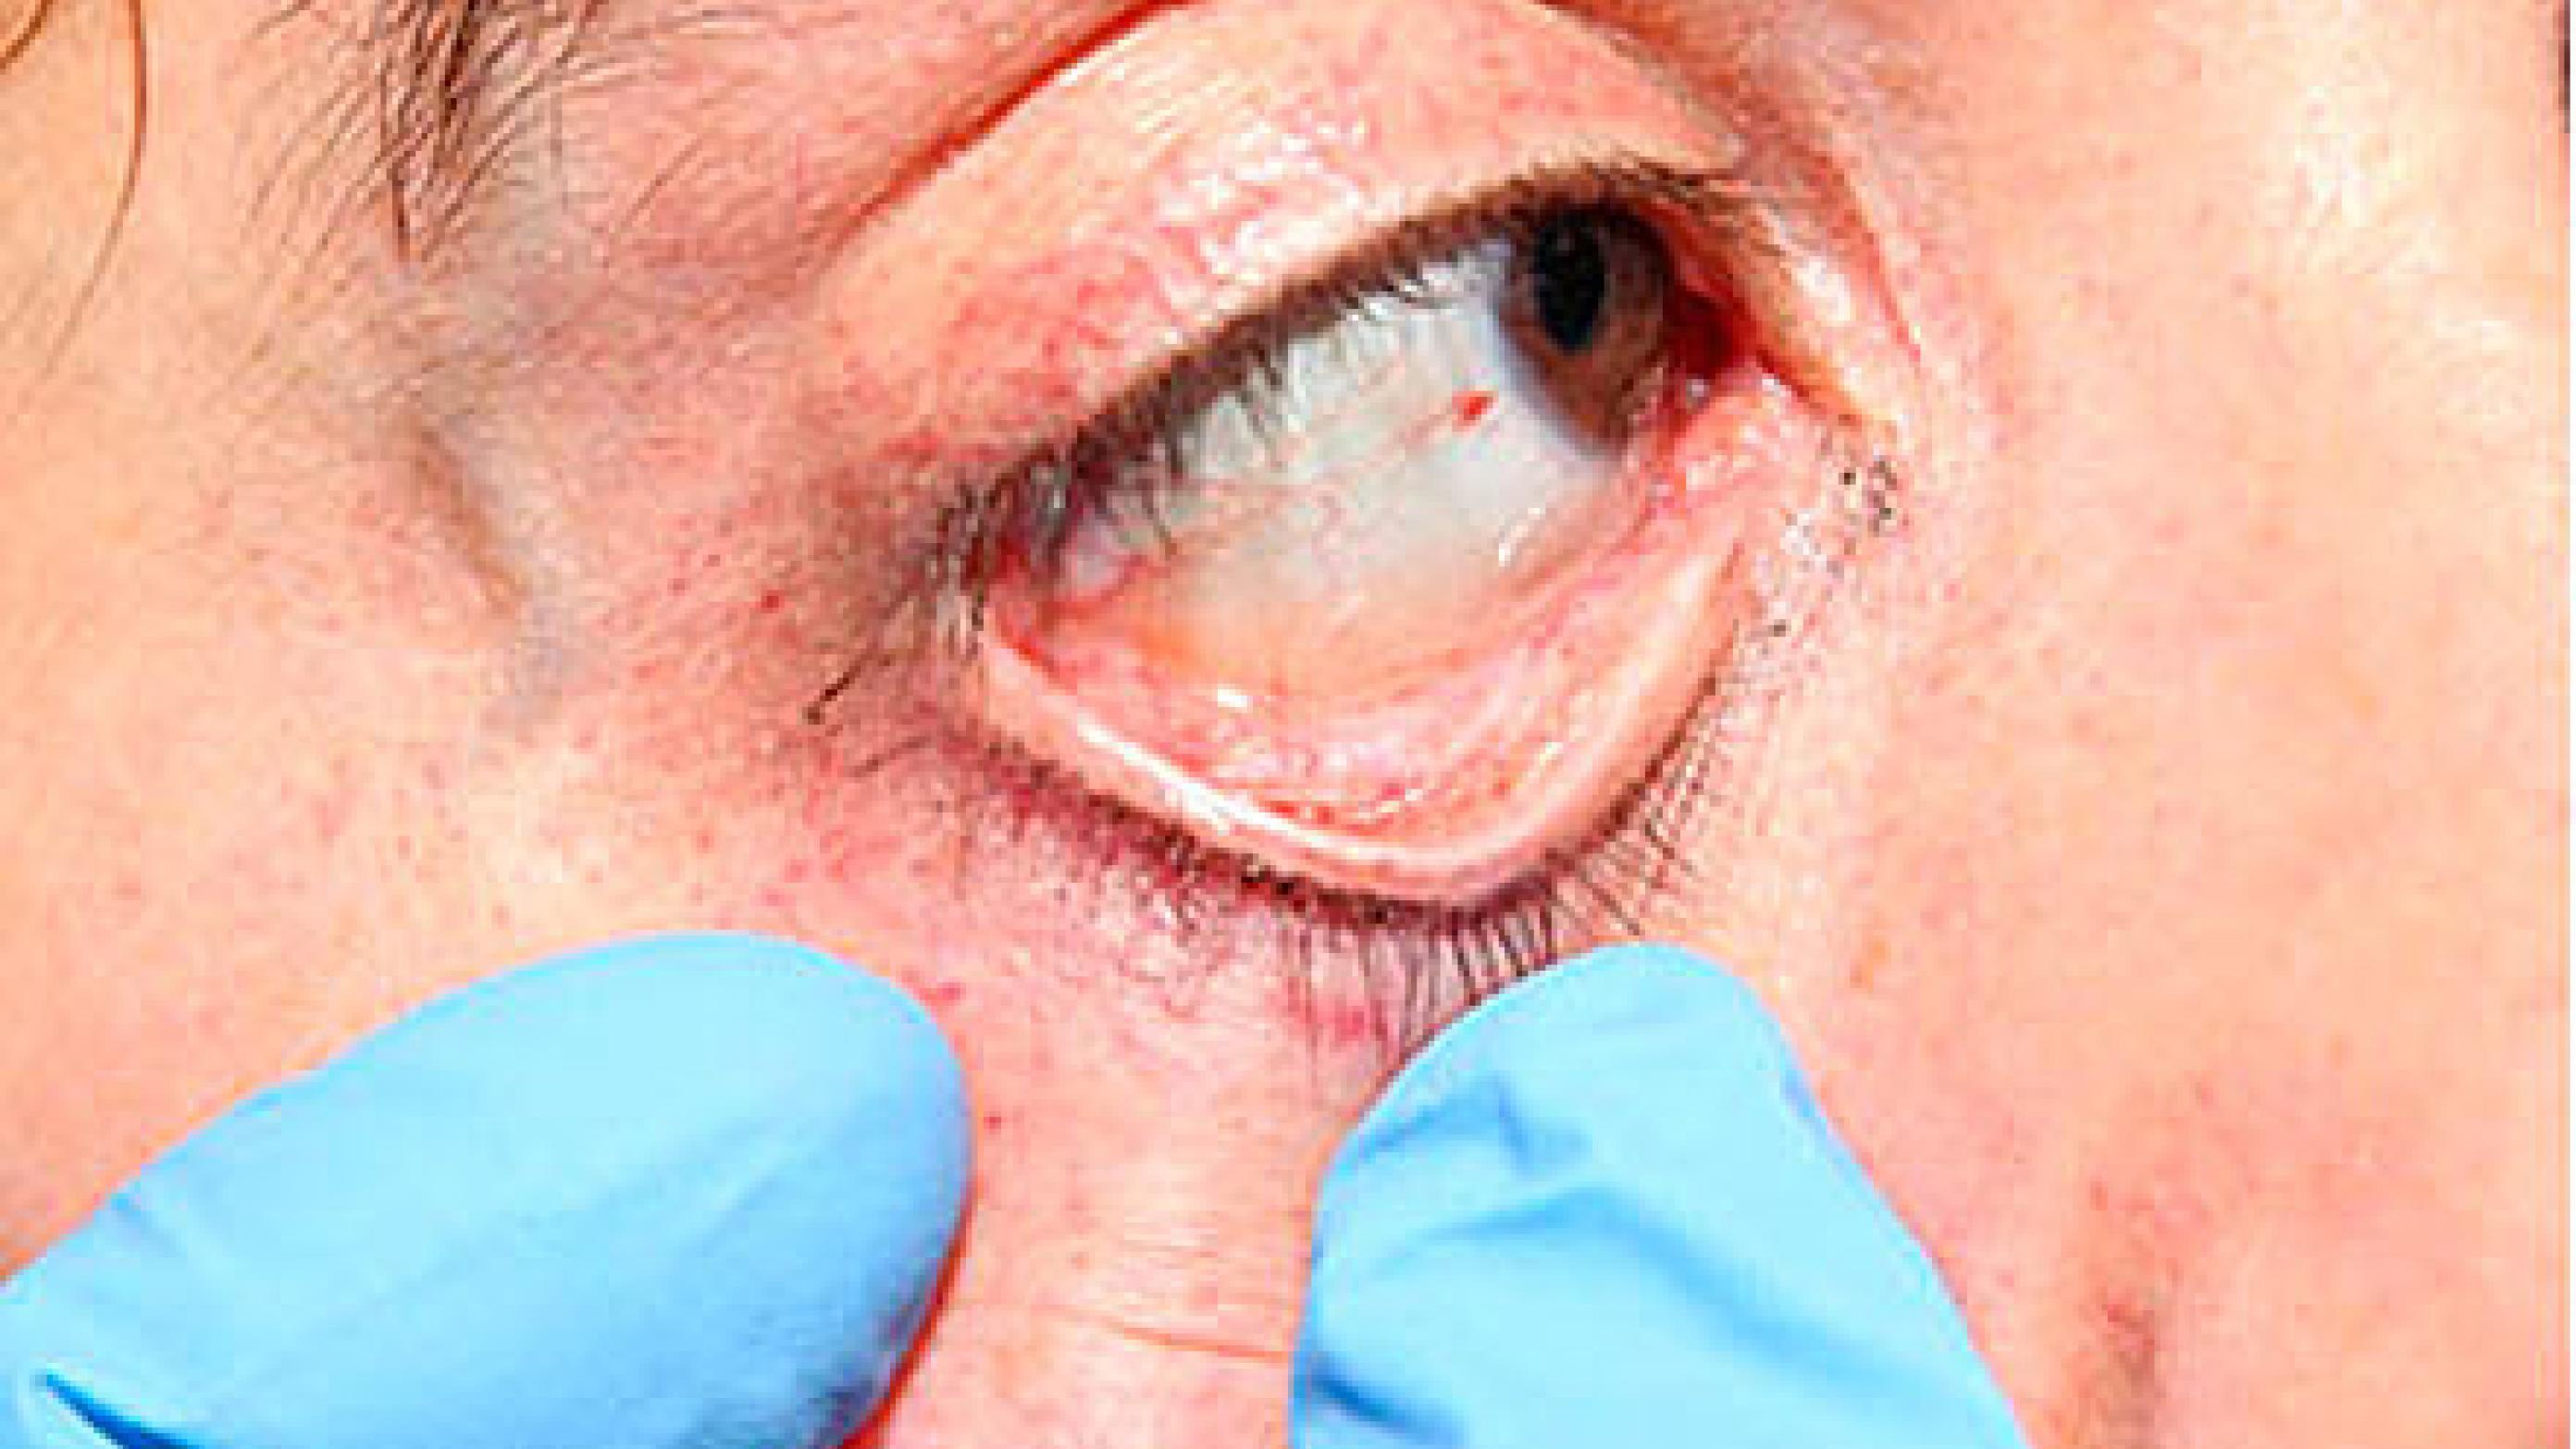 Punktformede blødninger i øjnenes bindehinder og øjenomgivelserne er tegn på et kraftigt og dermed livsfarligt halsgreb.